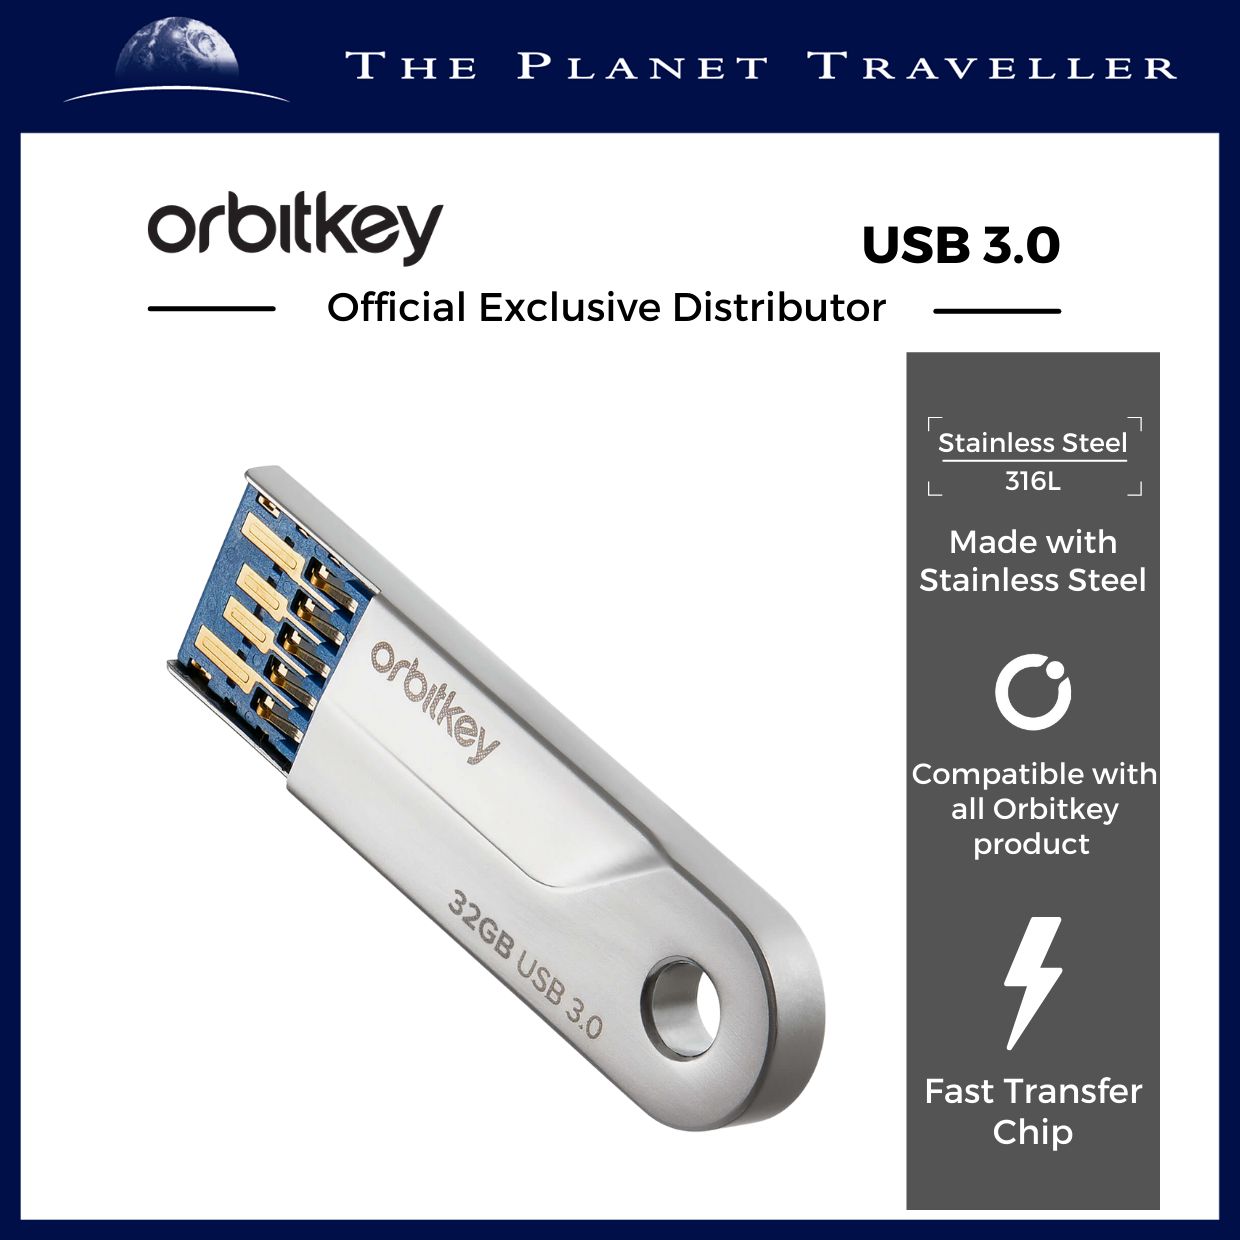  Orbitkey - USB 3.0 - Fast Transfer USB - 46.25 x 12.5